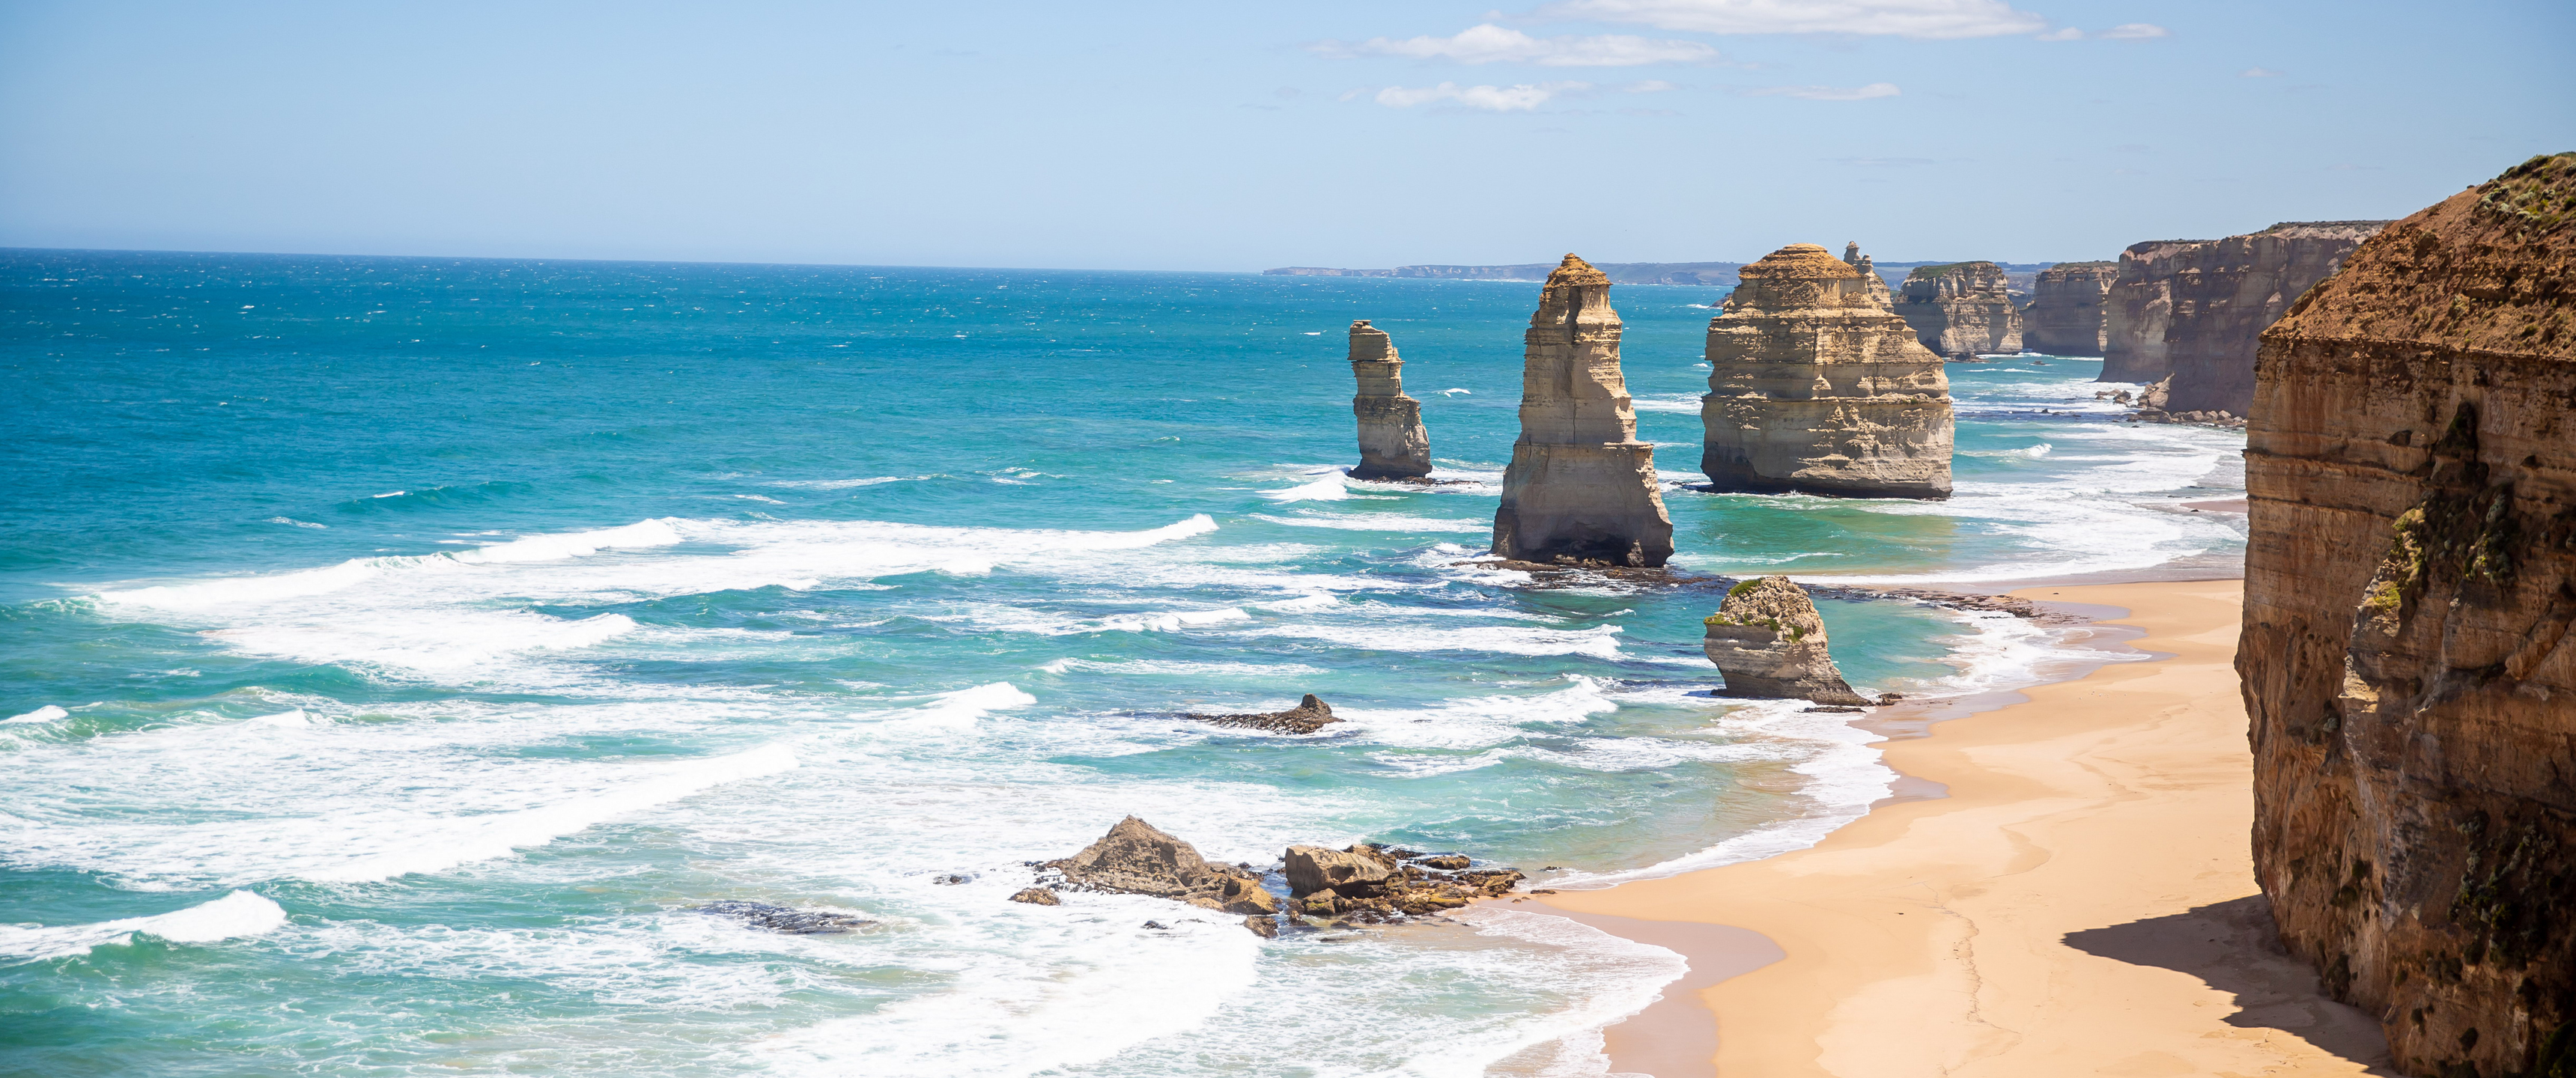 Landscape Australia Sea Twelve Apostles Waves Beach Sand Rocks 3440x1440